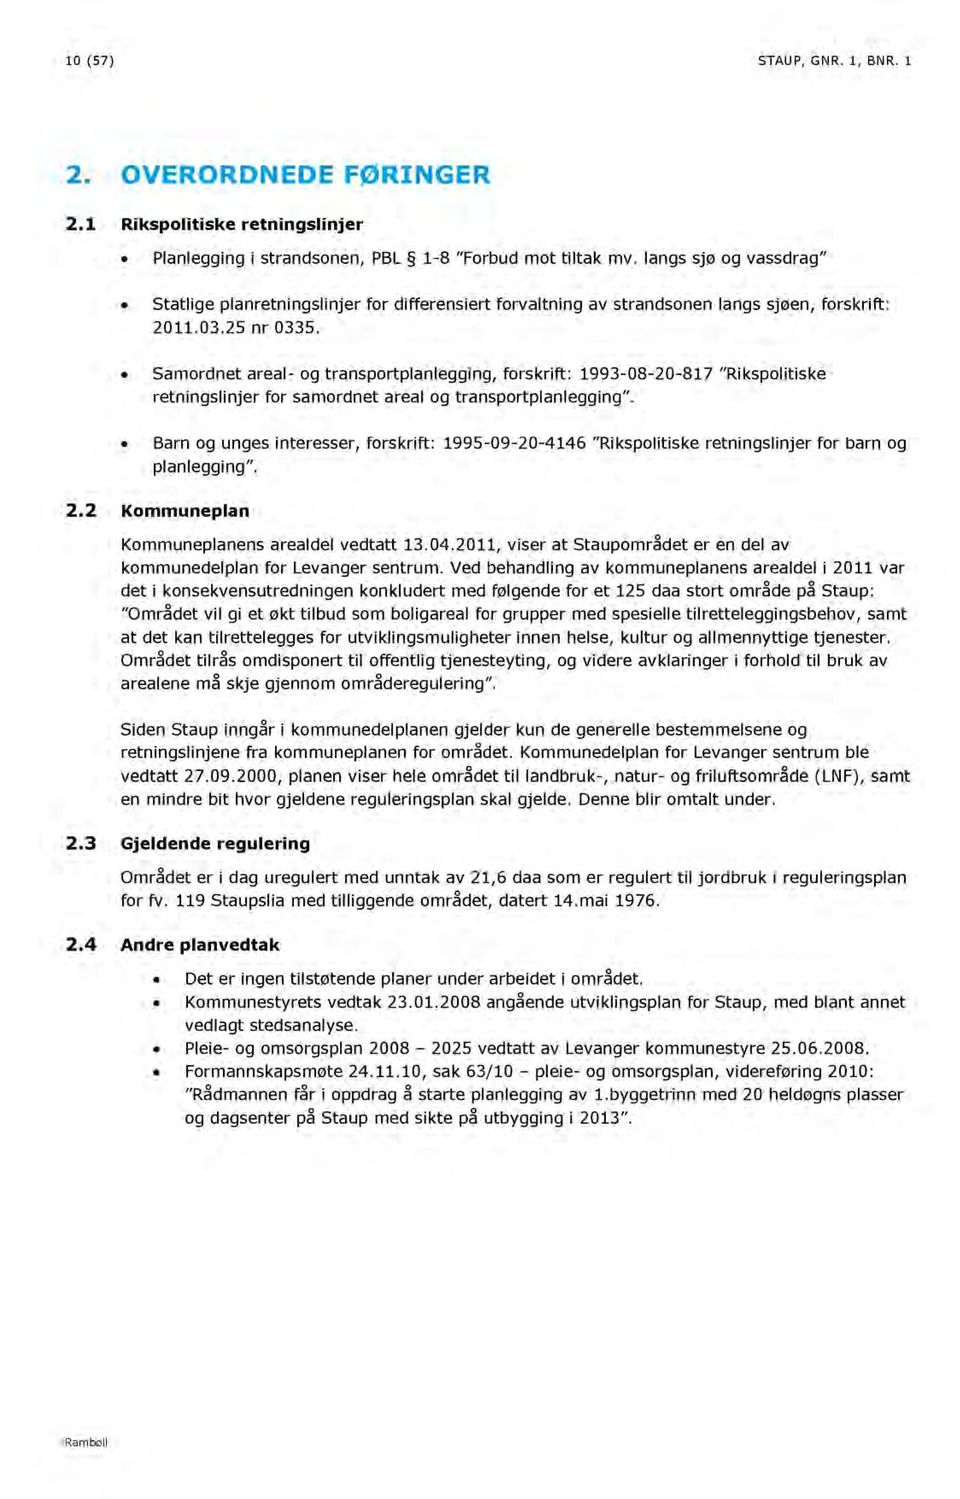 Samordnet areal- og transportplanlegging, forskrift: 1993-08-20-817 Rikspolitiske retningslinjer for samordnet areal og transportplanlegging.